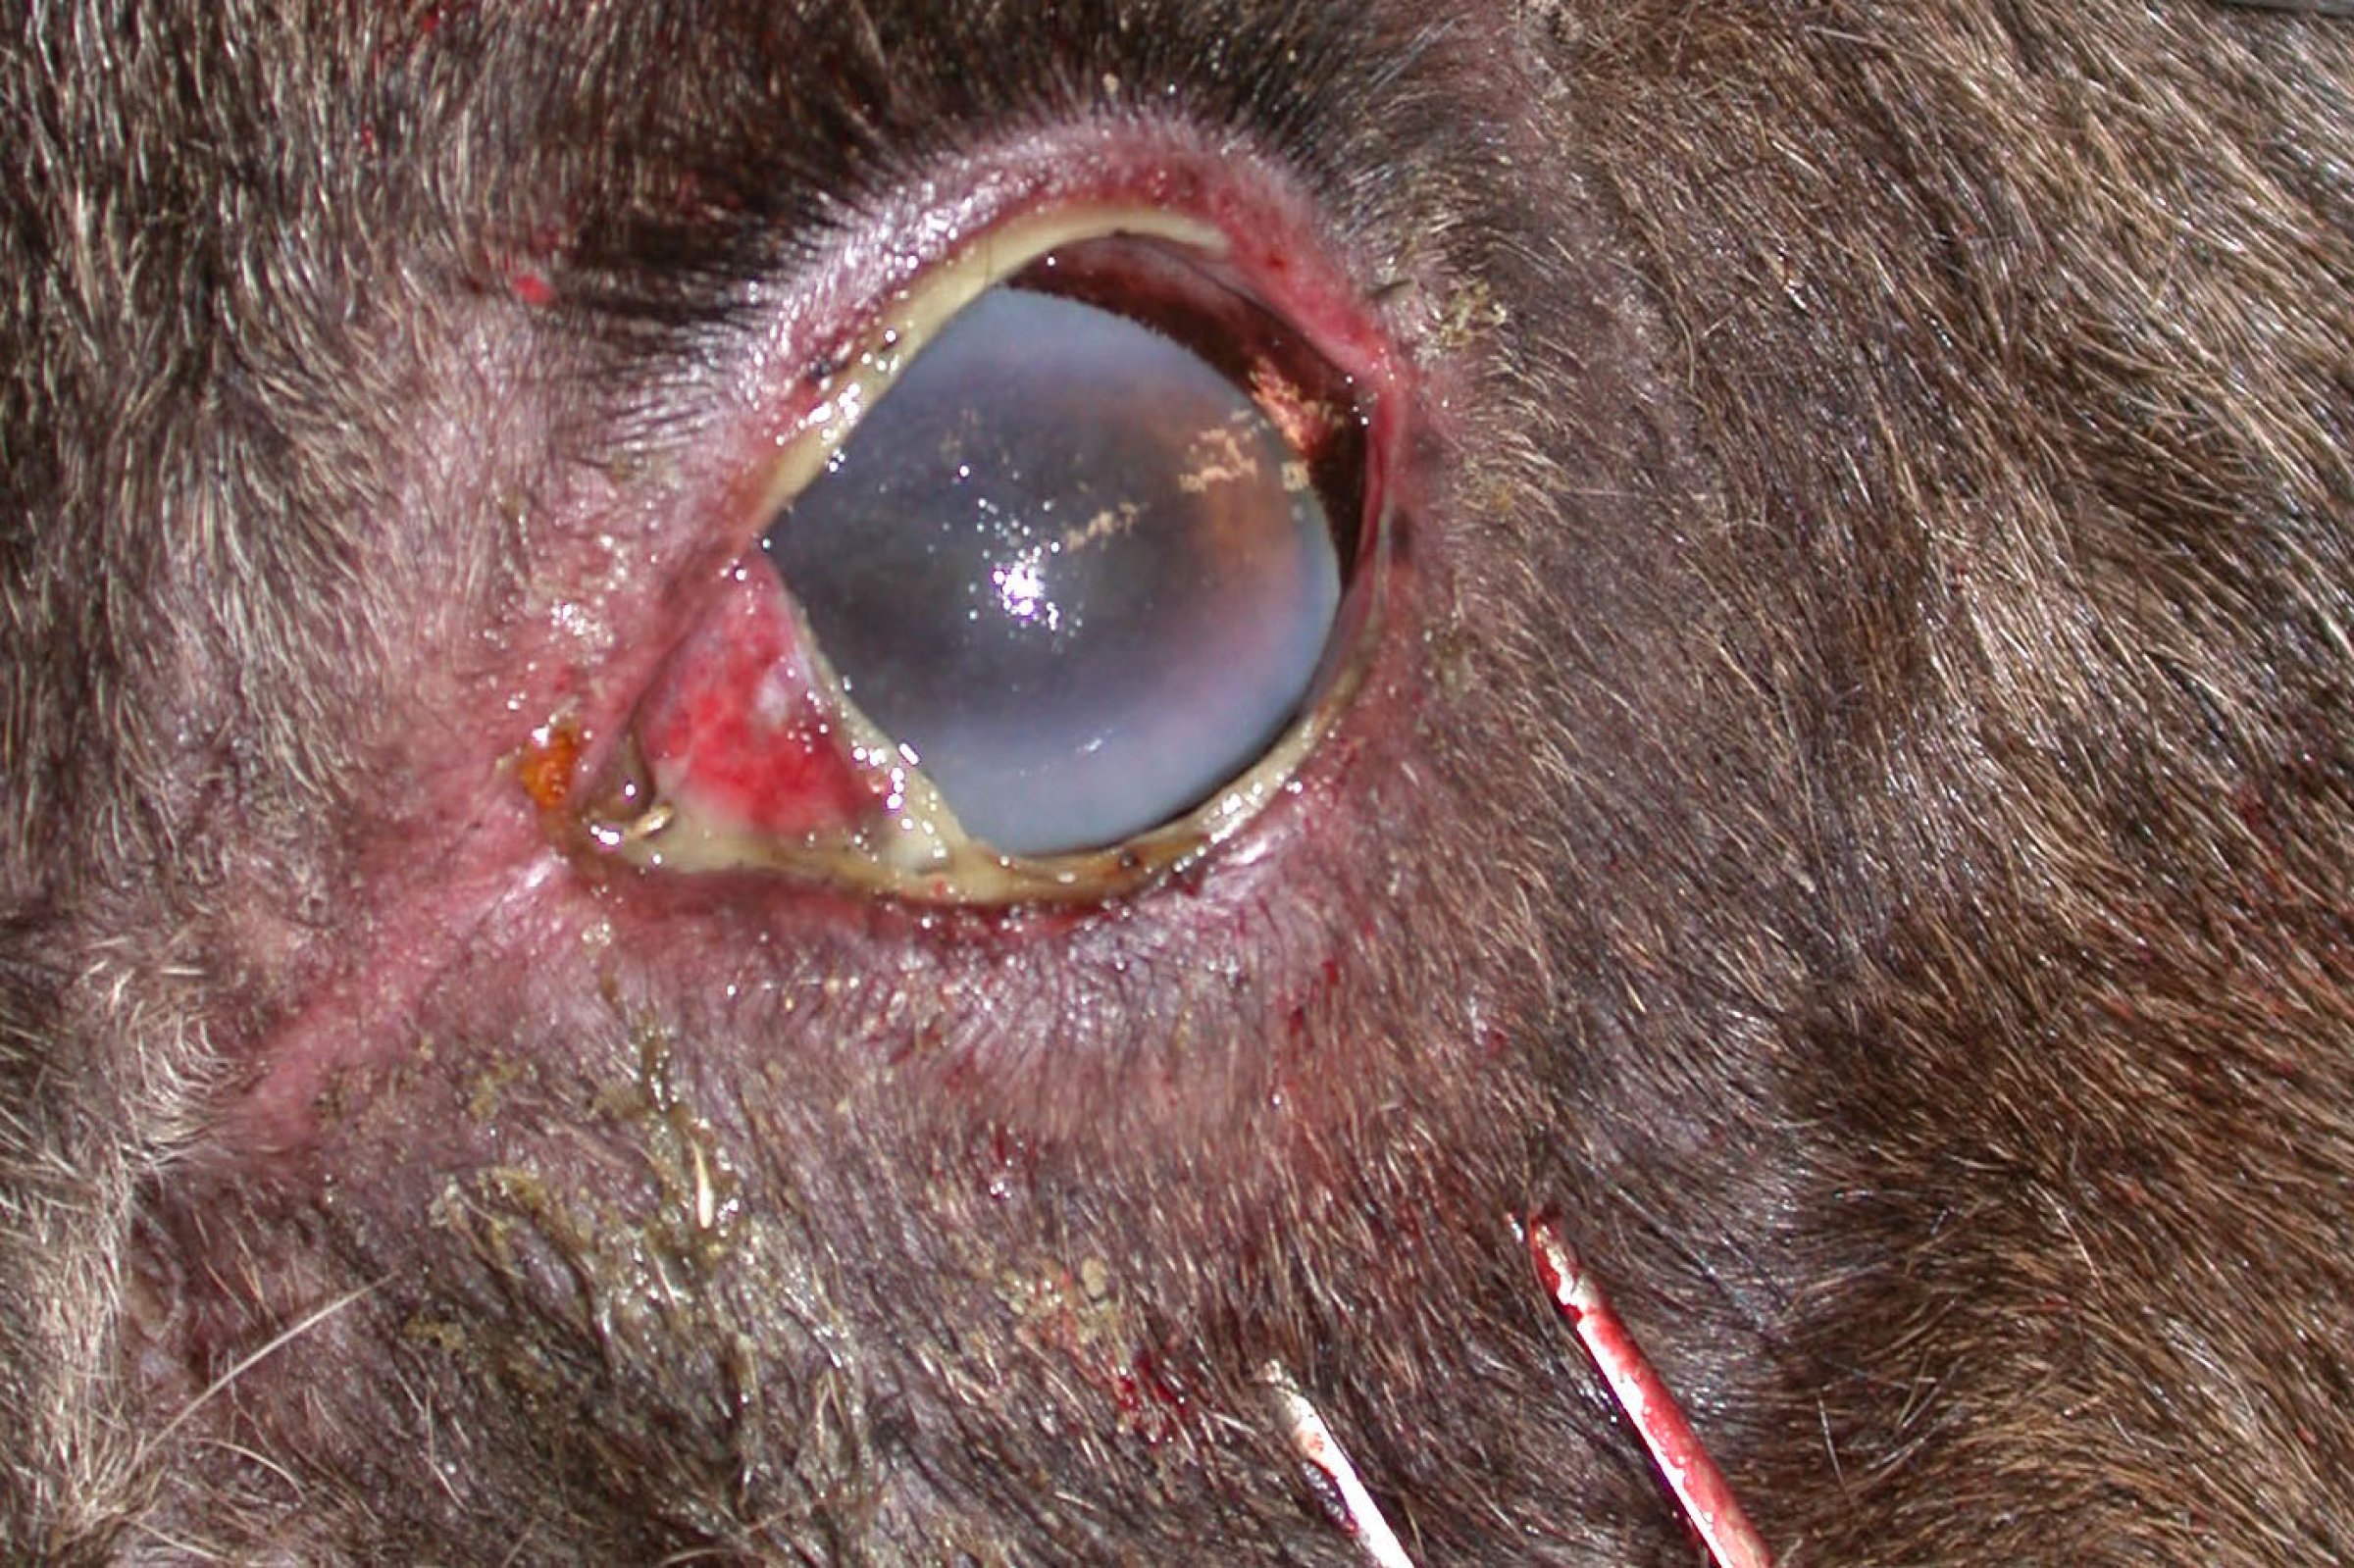 Øyeforandringer ved ondartet katarrfeber hos en elg: Hornhinna er blakket i ytterkantene, og man ser øyekatarr med rødme og verk (puss). Foto: Veterinærinstituttet